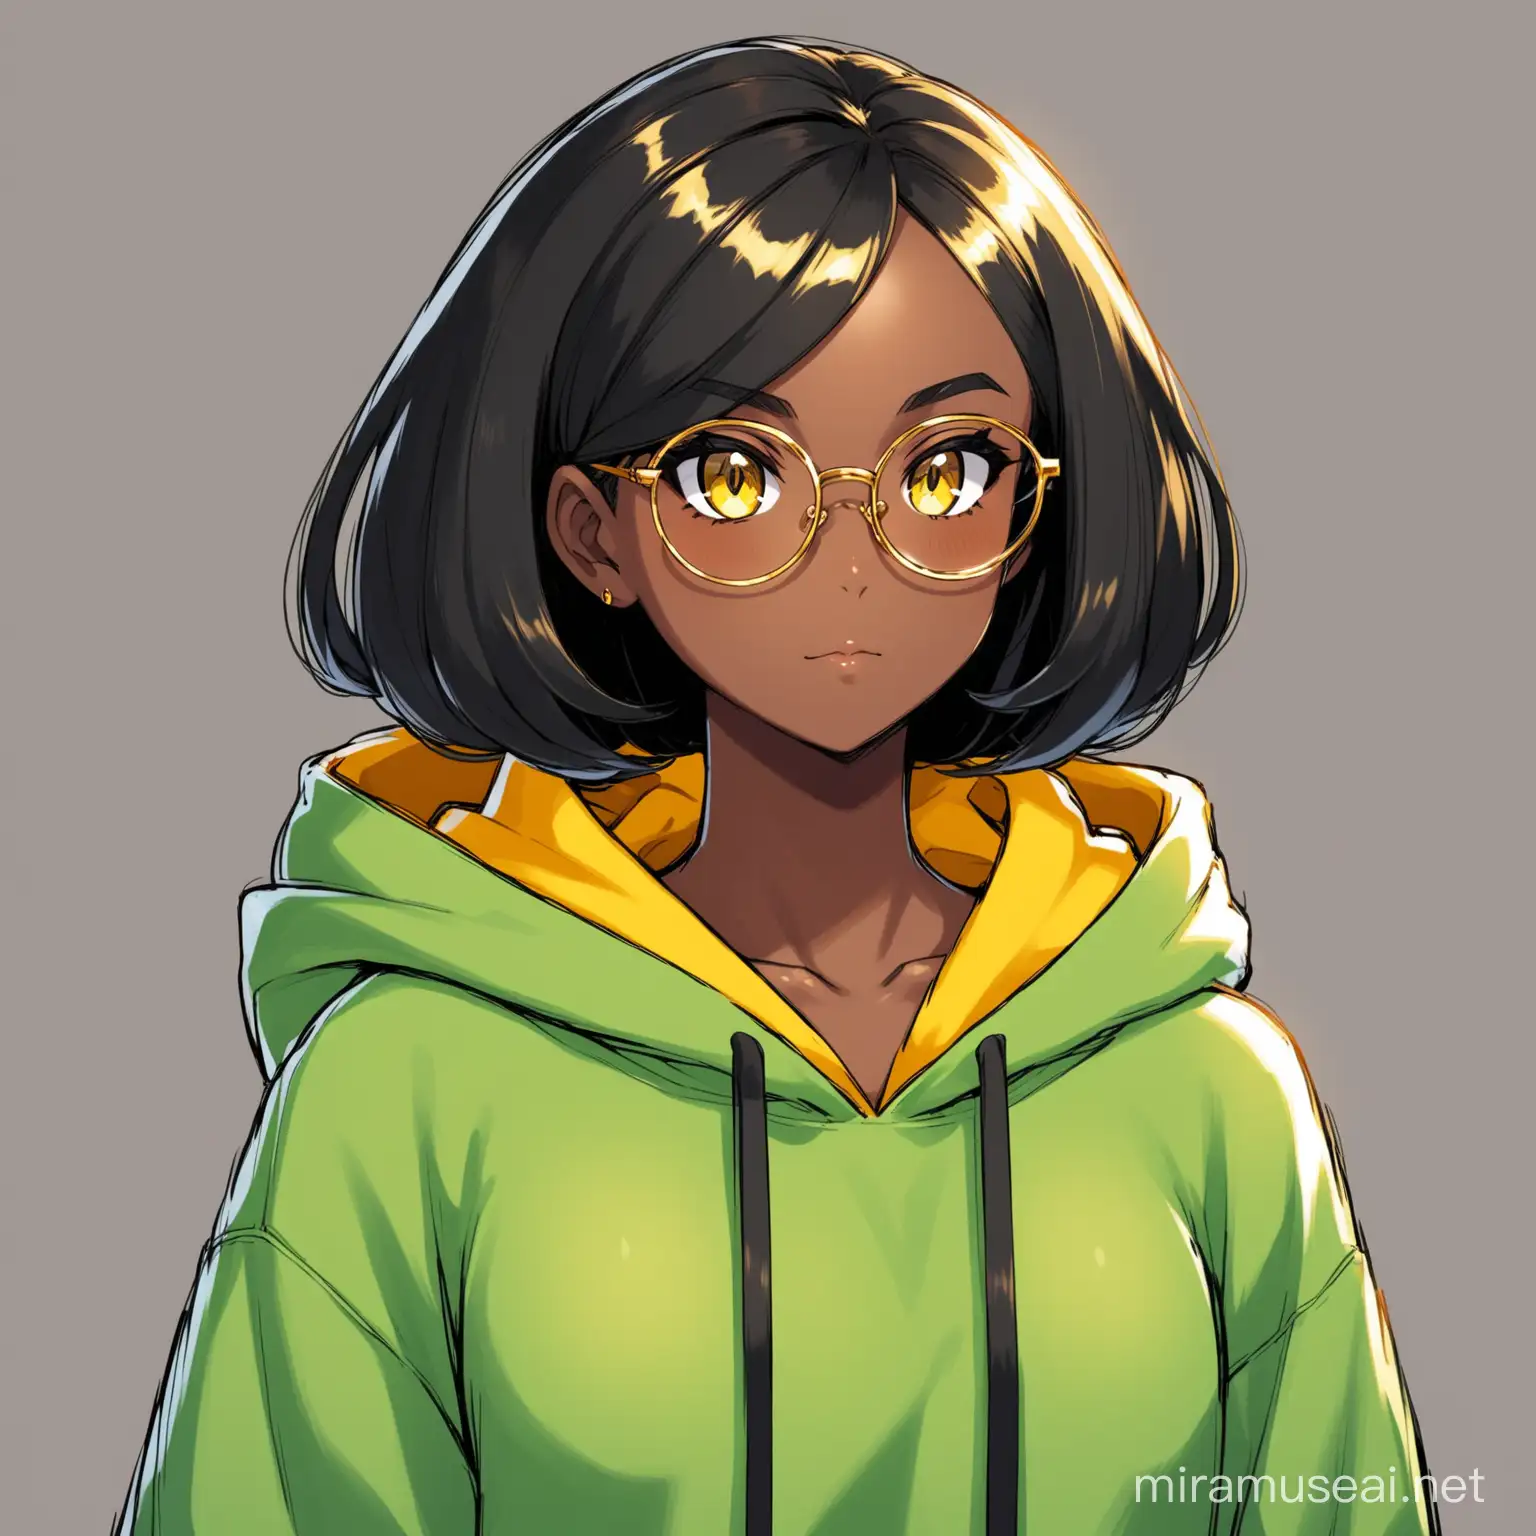 Black skinned girl, black hair shoulder lenght, golden eyes, pokemon style, green hoodie, glasses